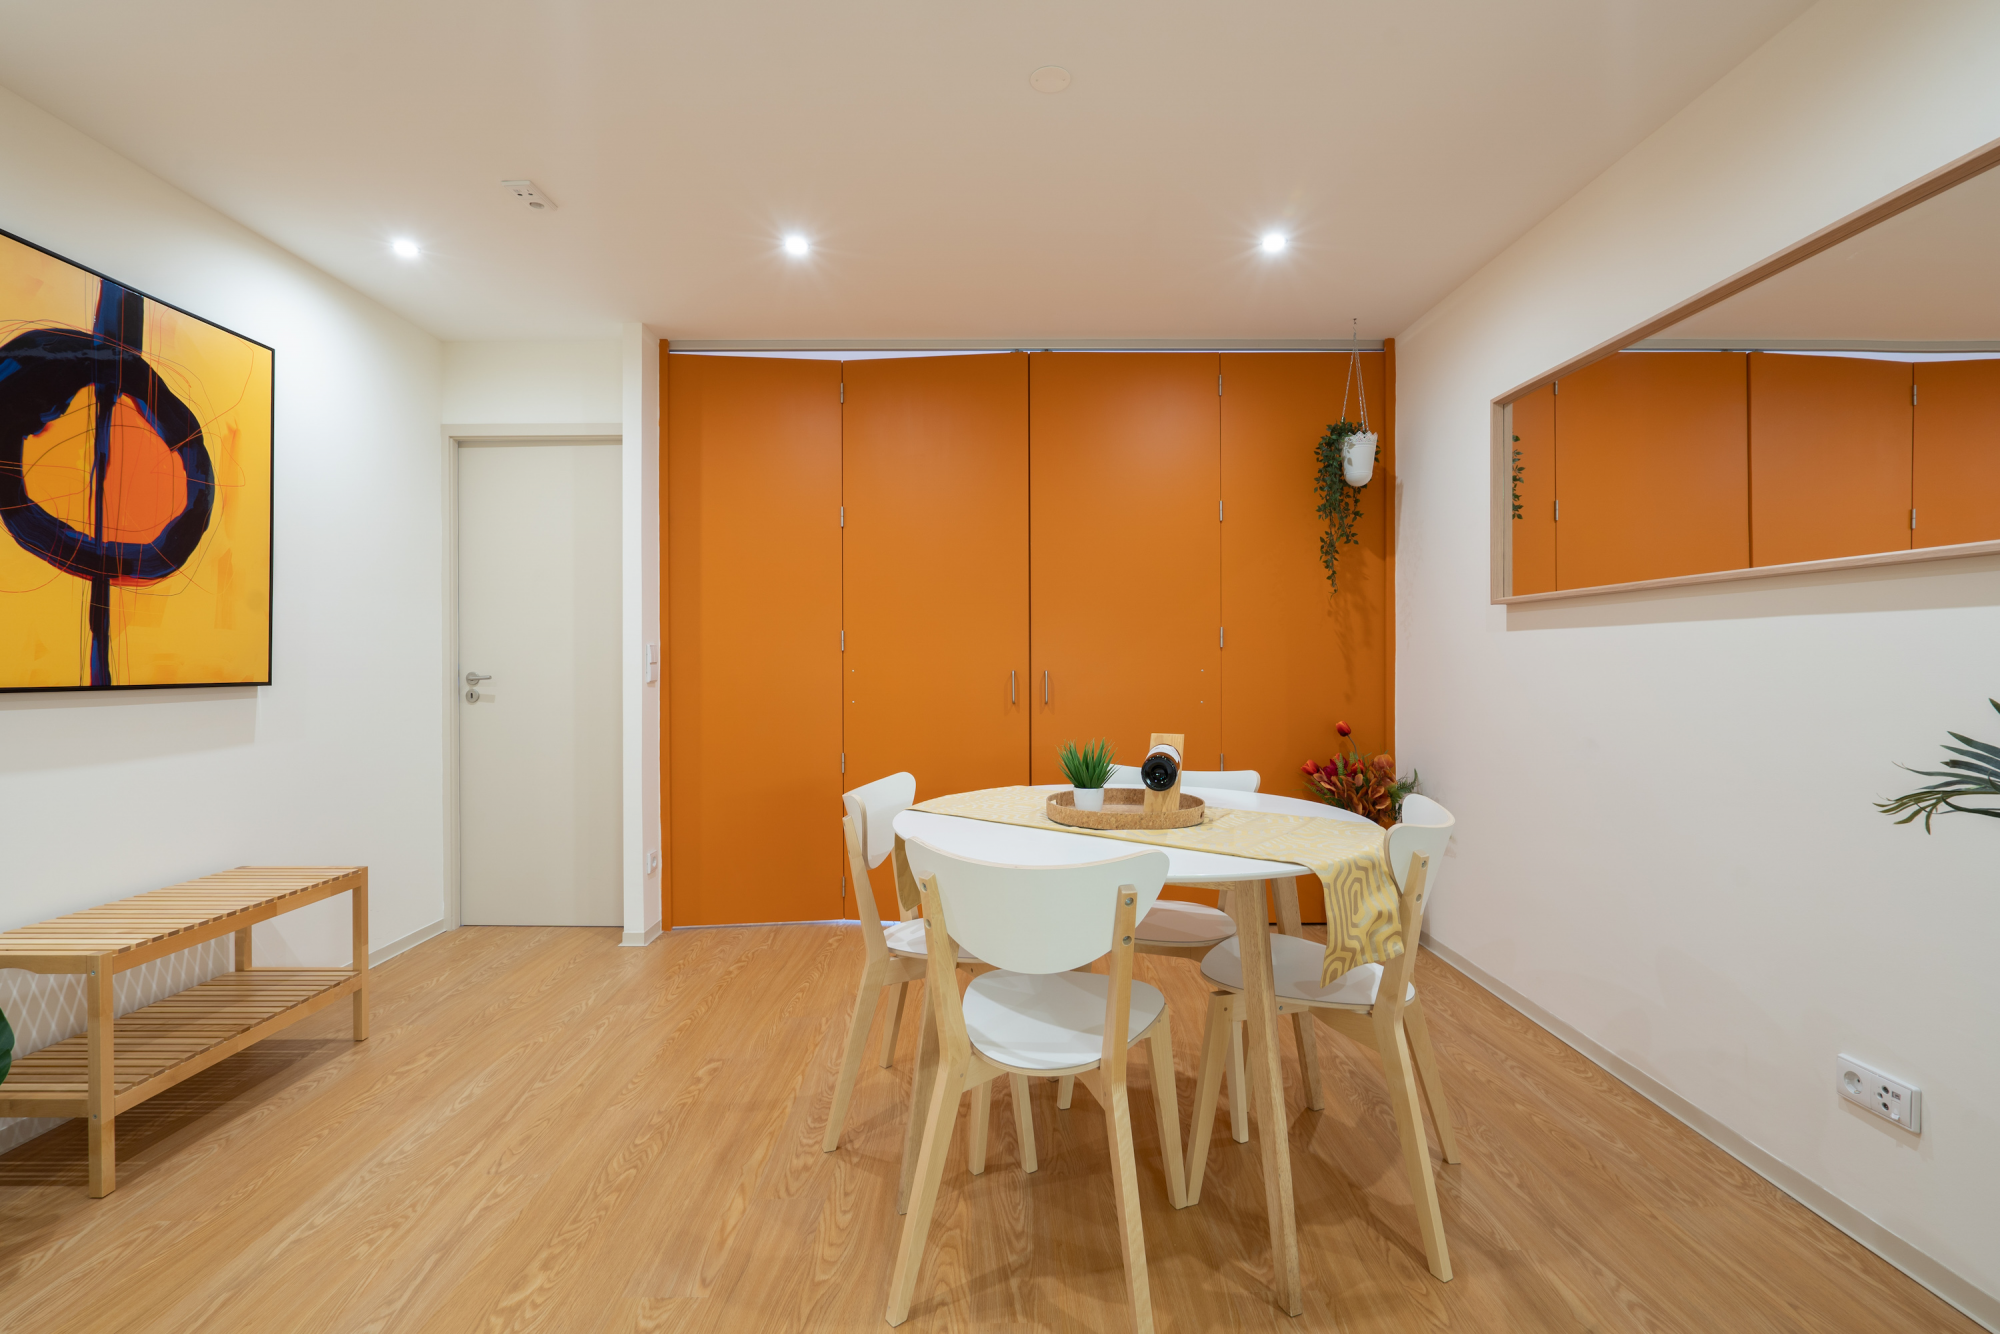 Apartamento Colorido e Iluminado com Varanda por Host Wise